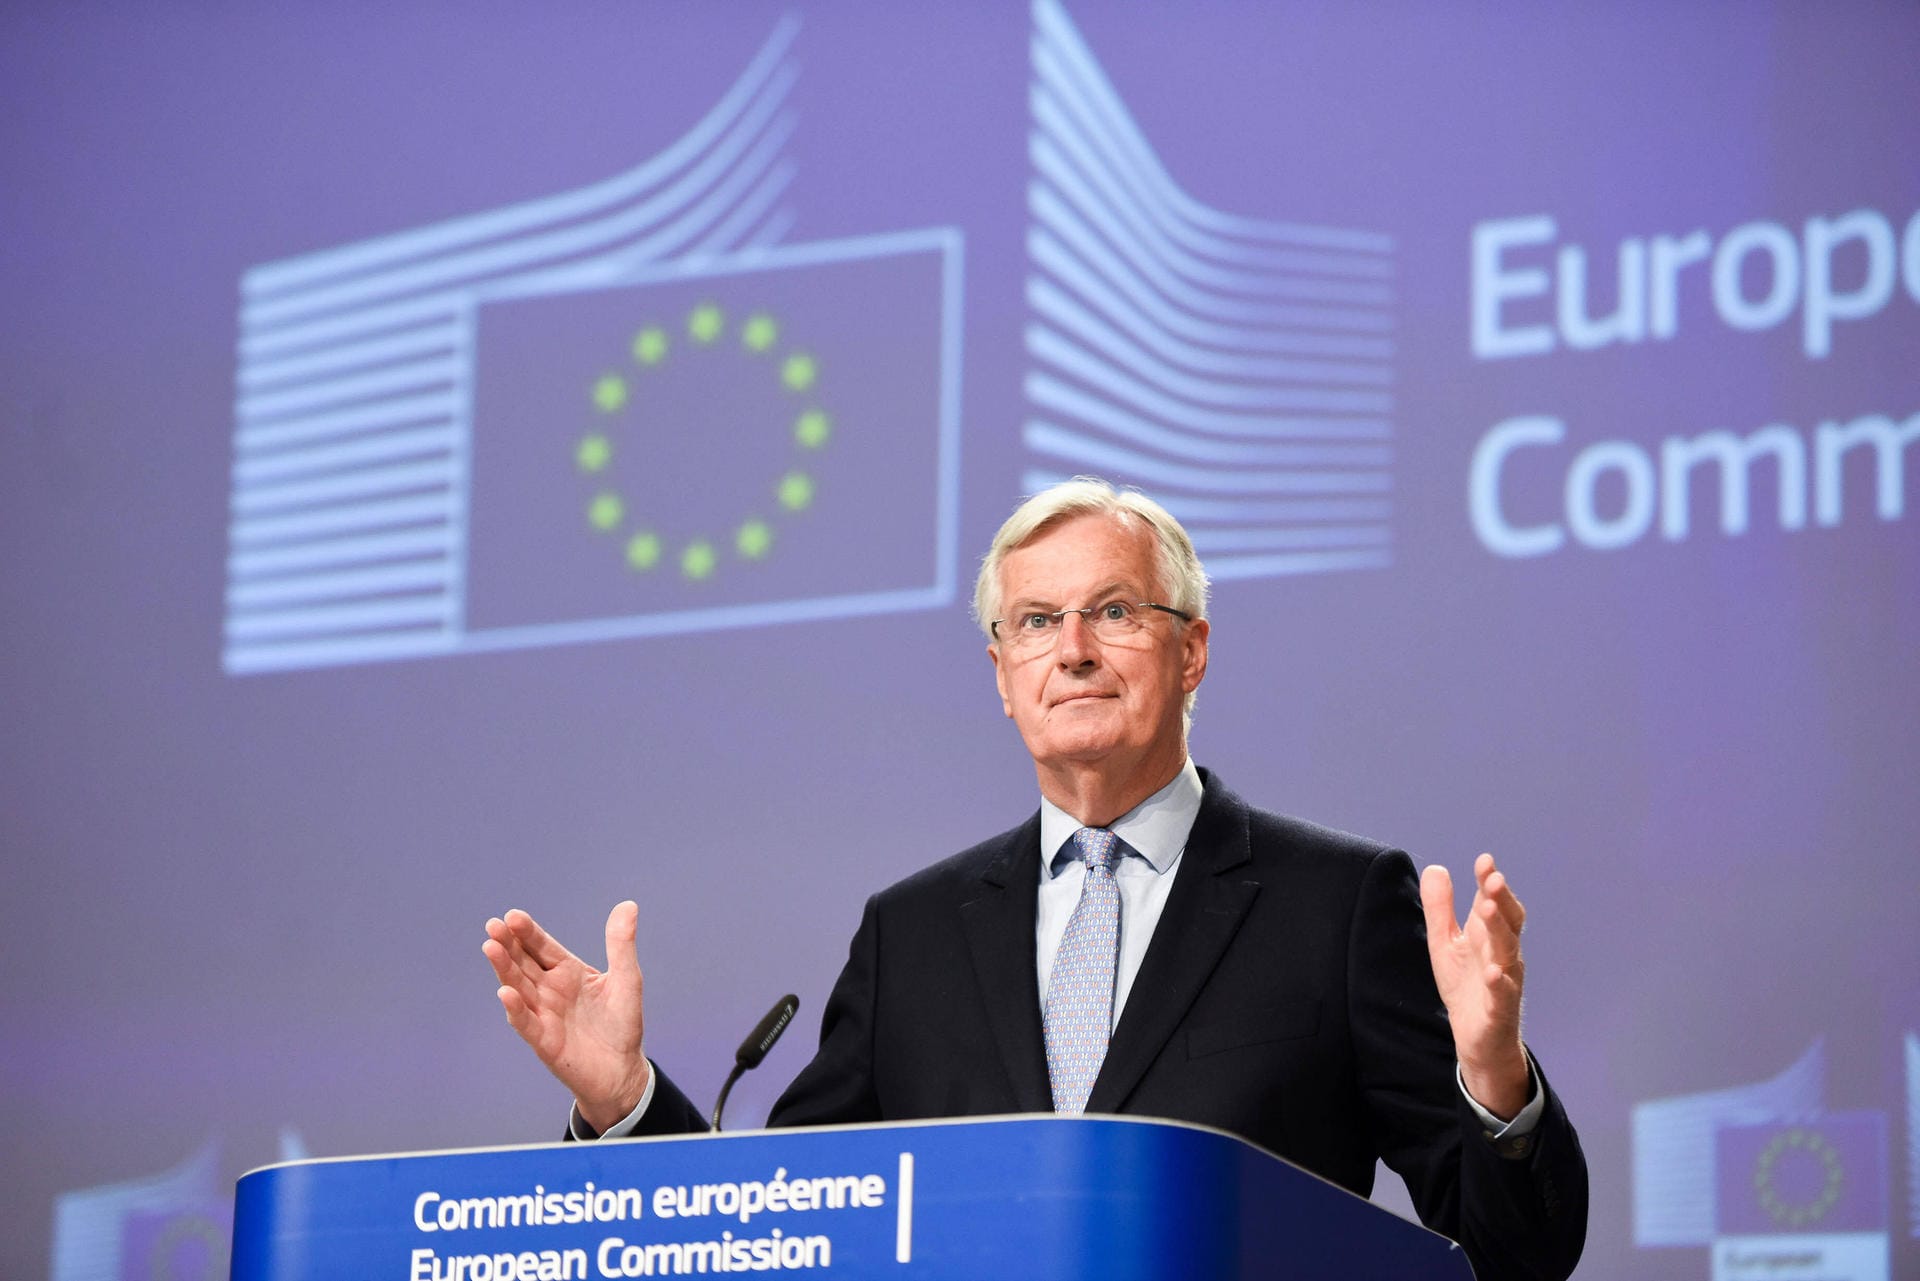 Michel Barnier hat keinen leichten Job: Als EU-Unterhändler soll er die Europäische Union und Großbritannien zu einem guten dauerhaften Miteinander leiten. Seit März 2020 laufen die Verhandlungen – und es sieht nicht gut aus. Eine Einigung ist nicht in Sicht.